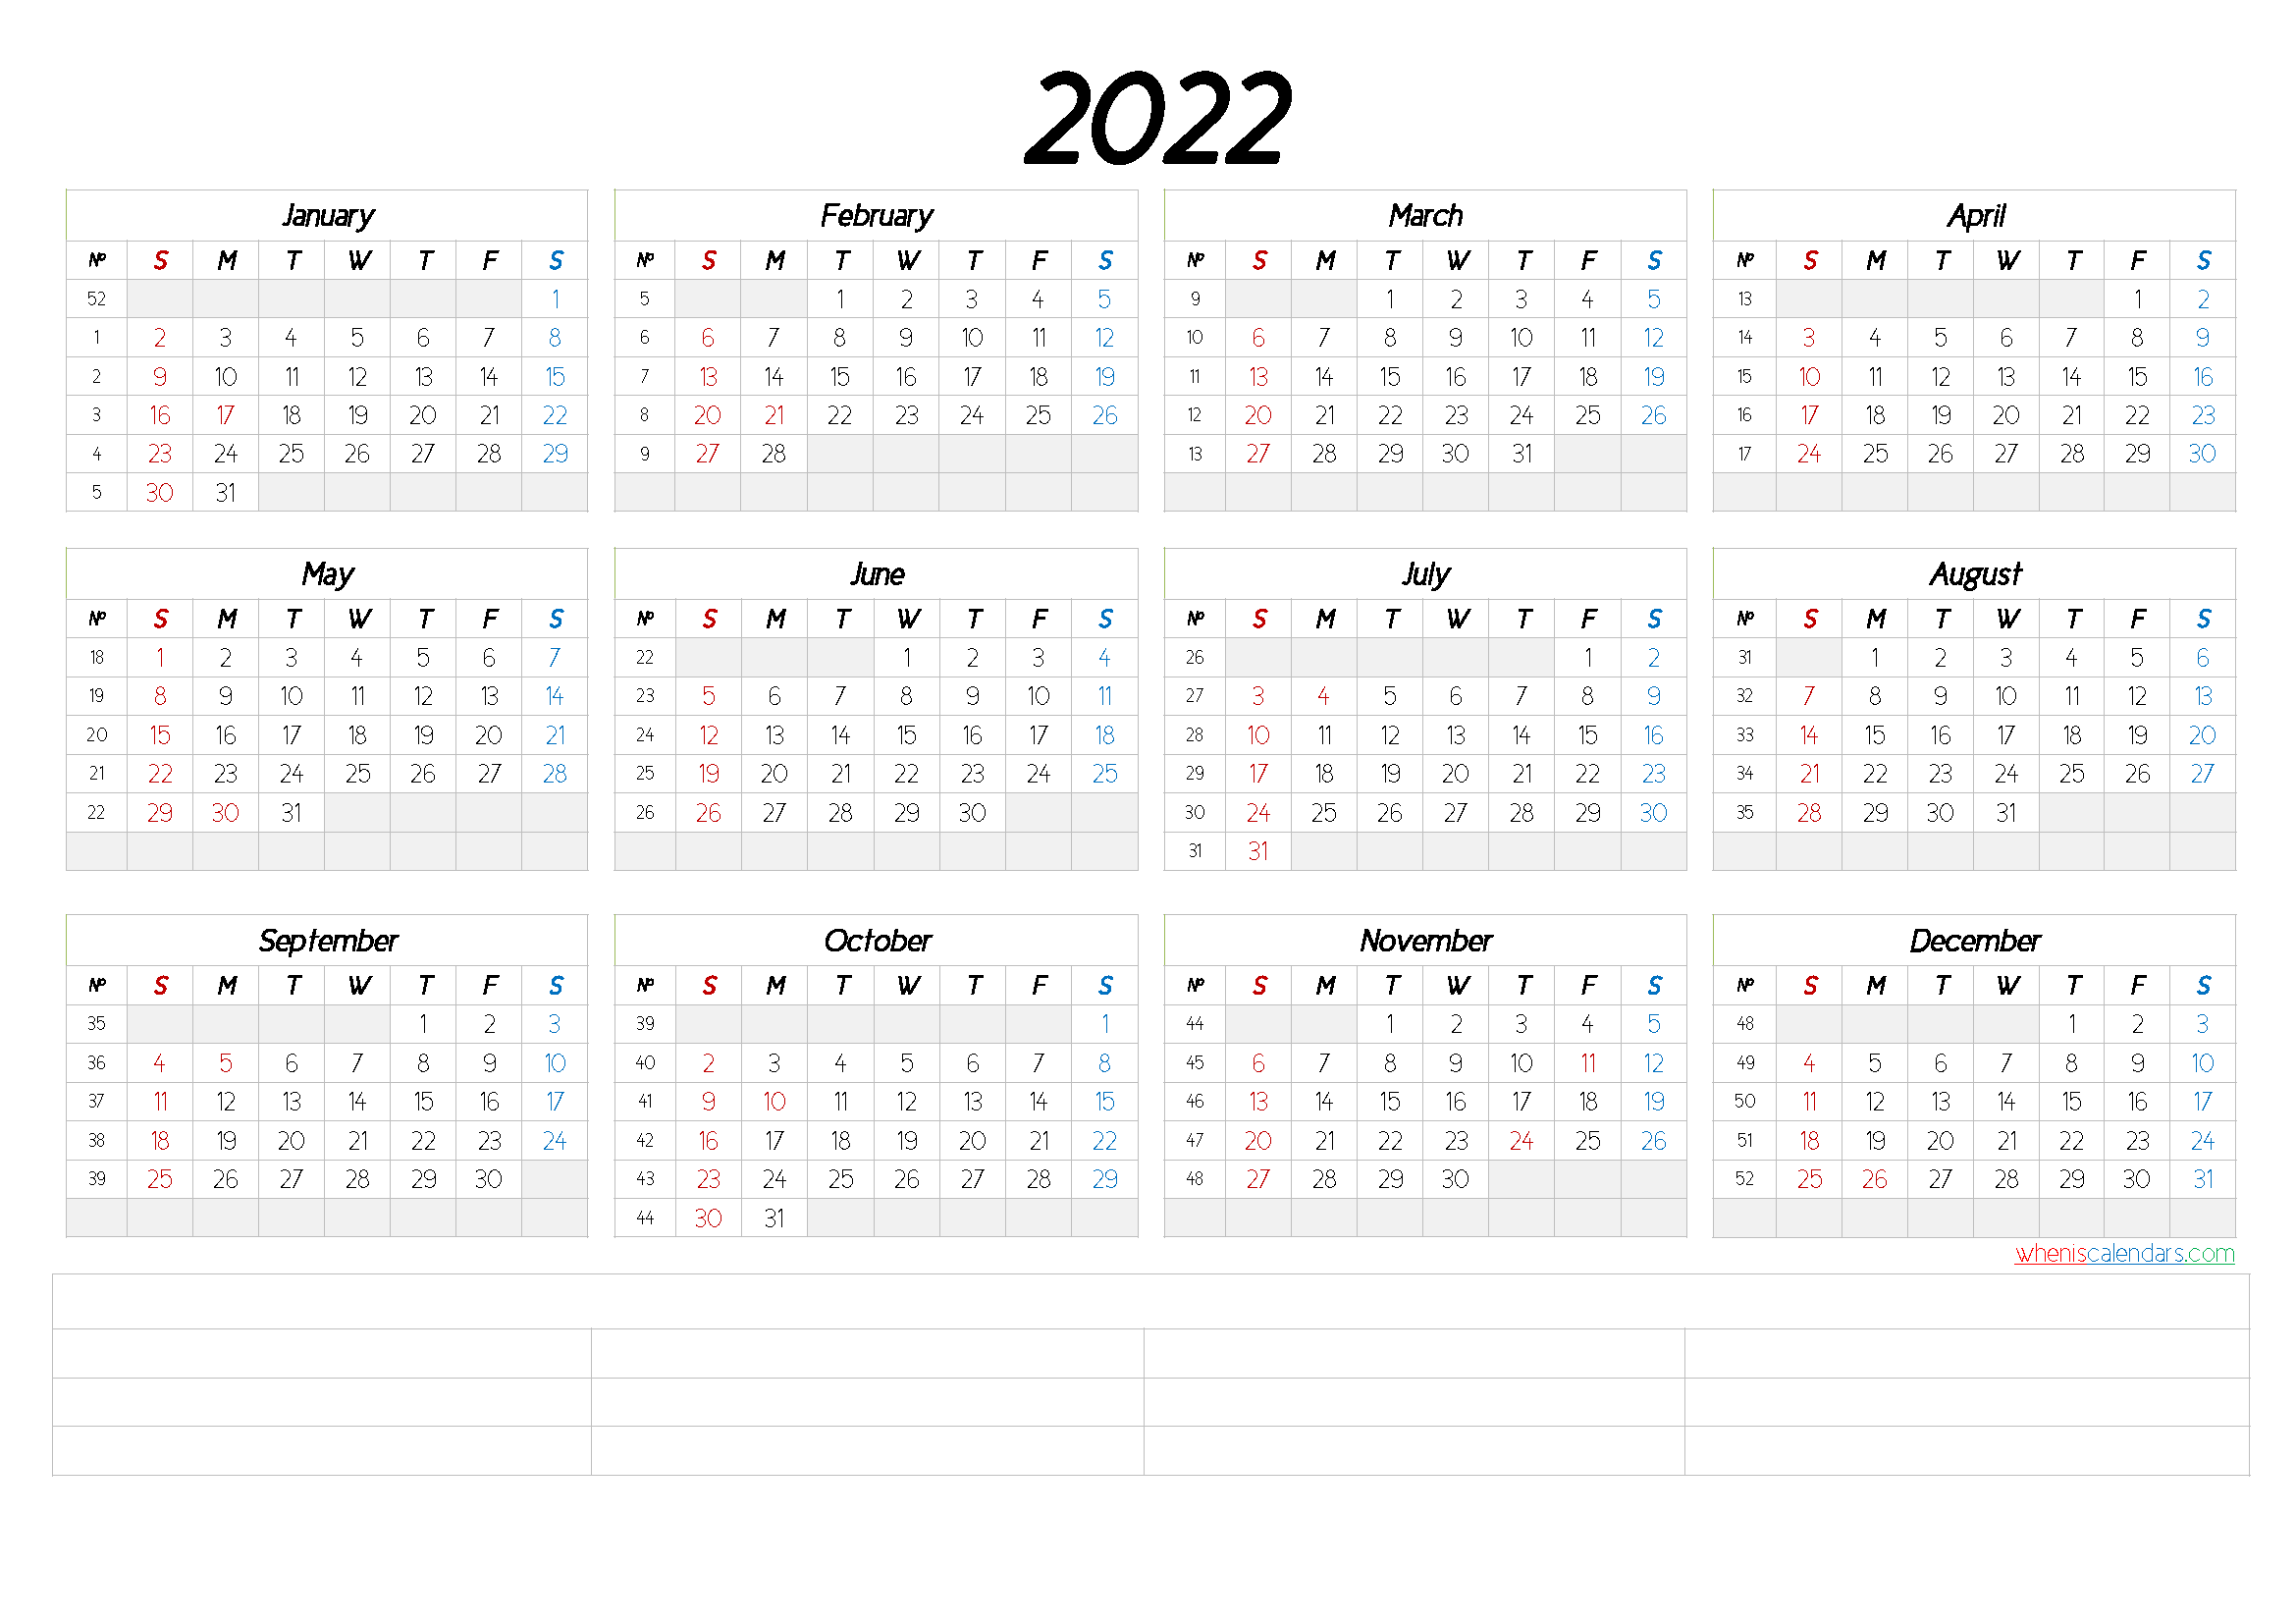 2022 Free Printable Yearly Calendar With Week Numbers 6 2022 Free